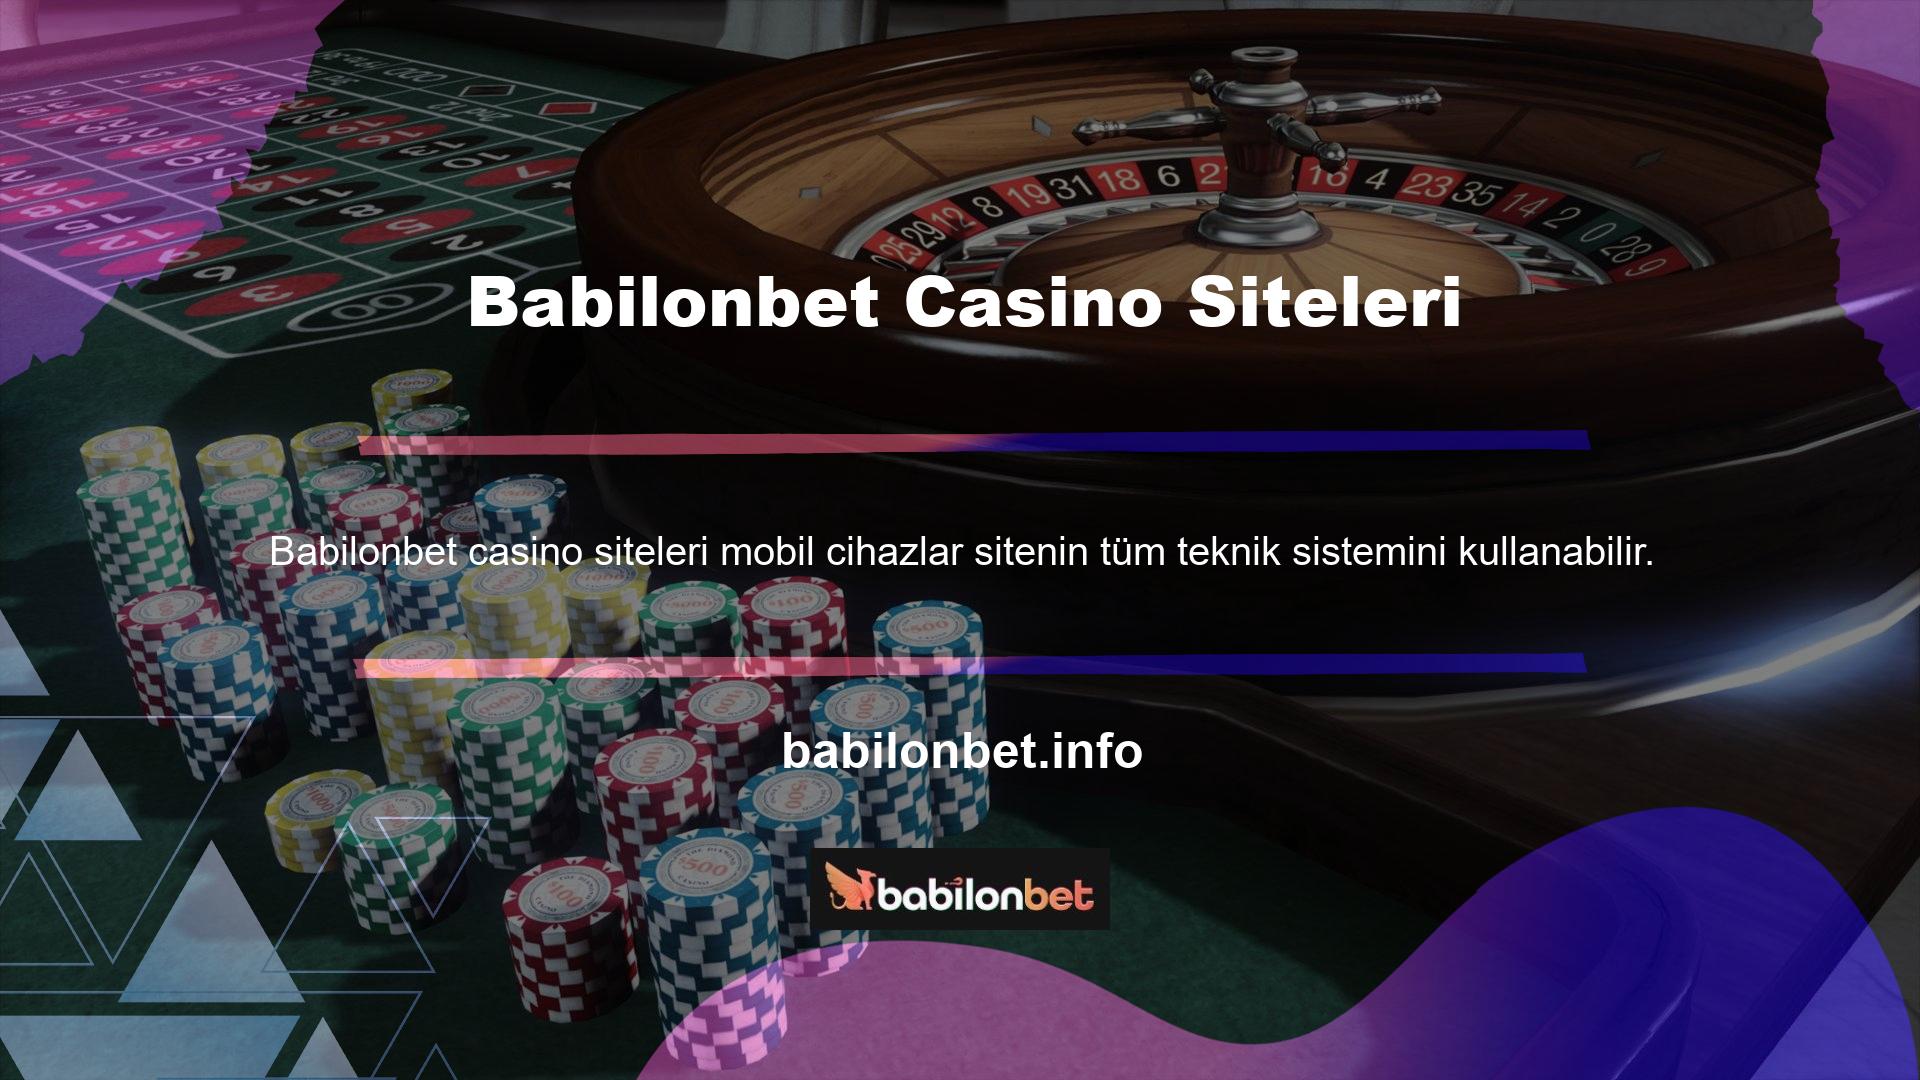 Casino sever, web sitesinden elde edilen geliri yatırımlara para yatırmak için kullanır